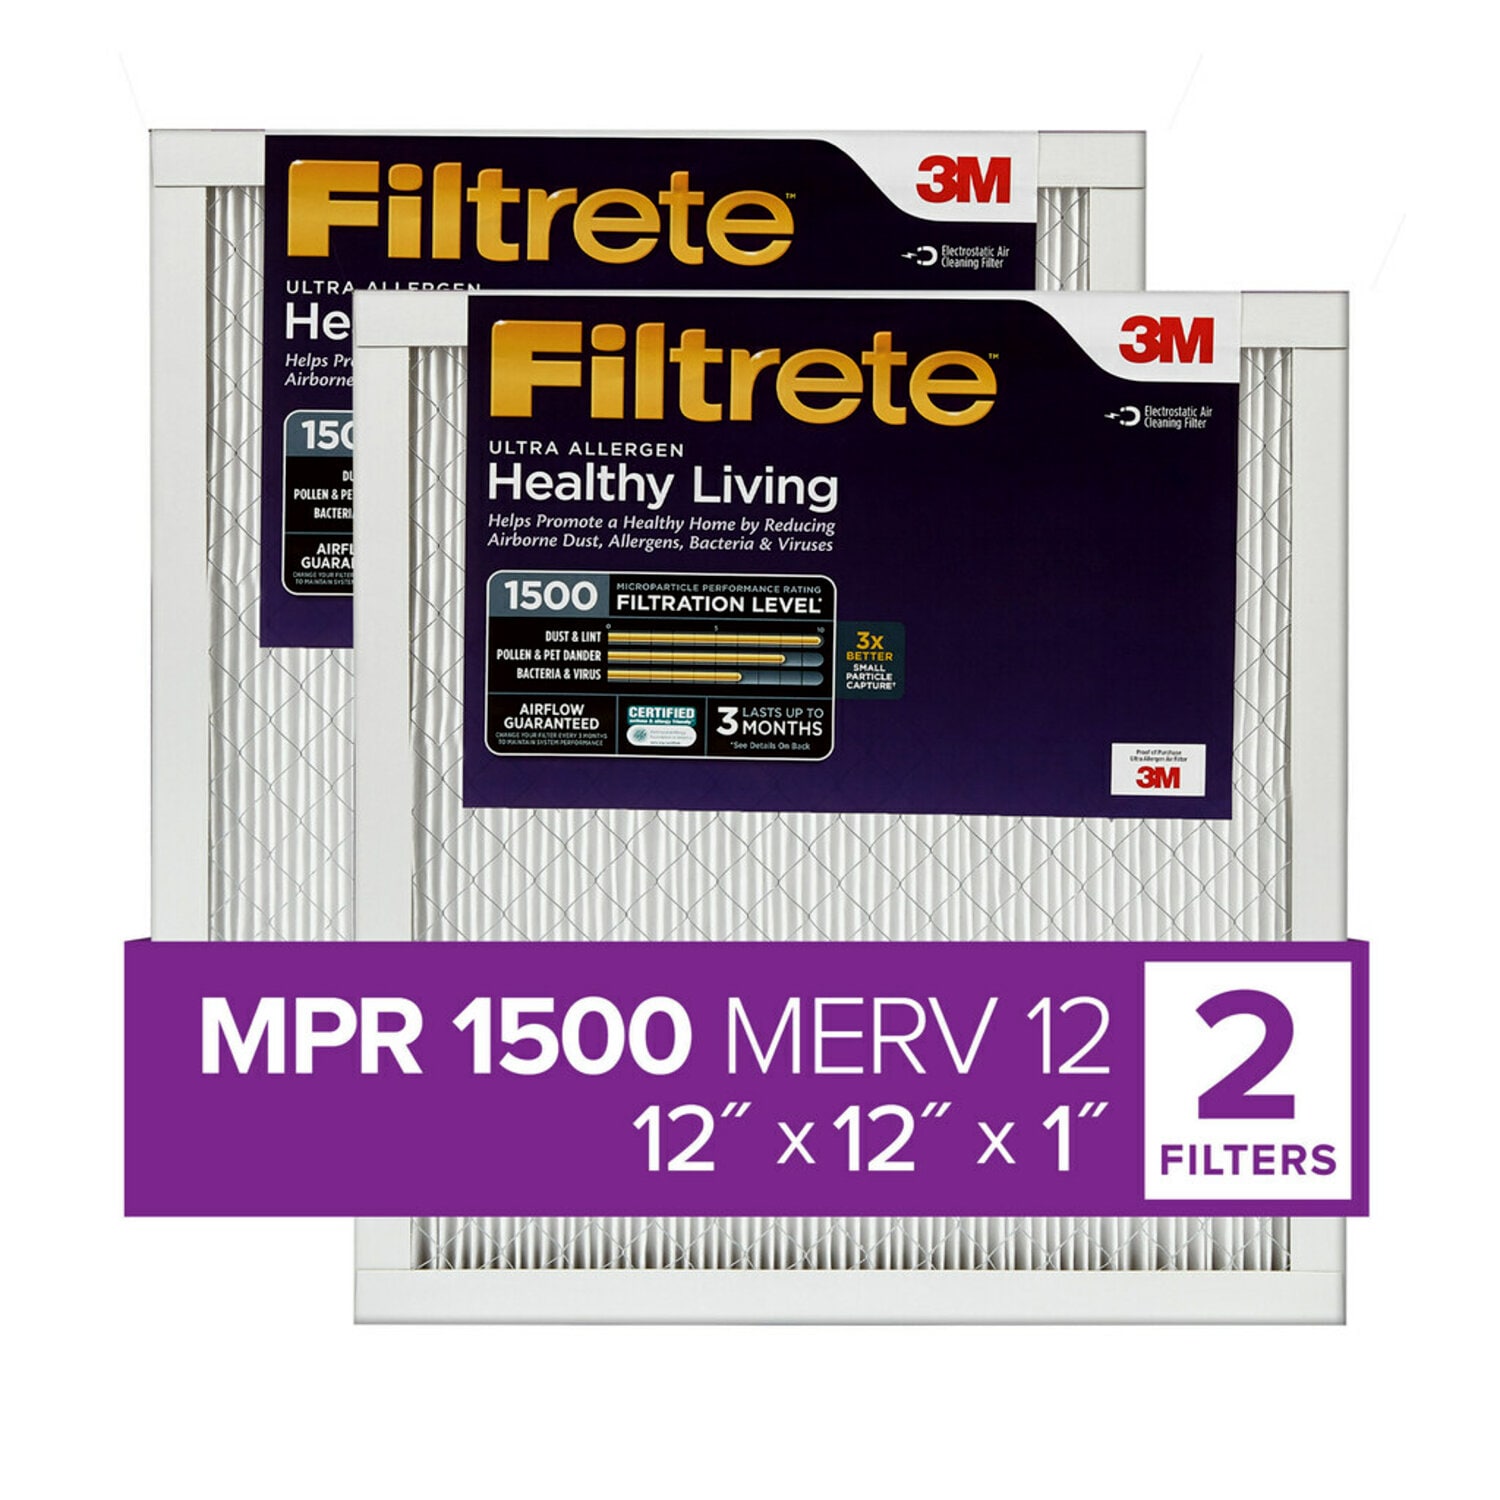 7100212153 - Filtrete Ultra Allergen Reduction Filter UR10-2PK-1E, 12 in x 12 in x 1 in (30.4 cm x 30.4 cm x 2.5 cm)